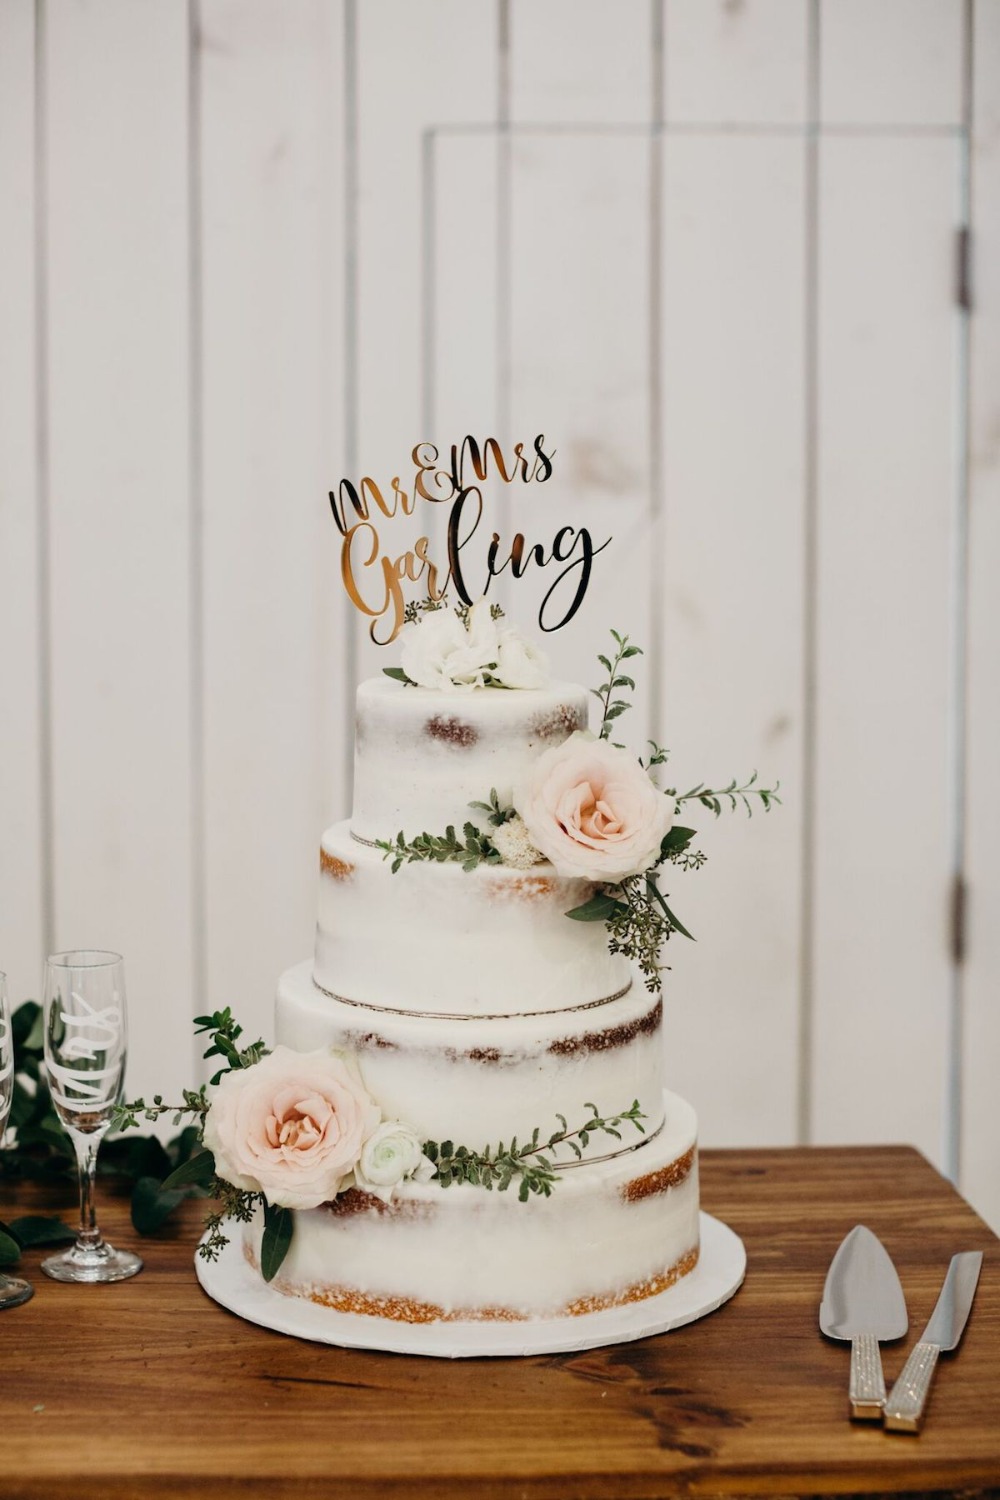 White and naked wedding cake